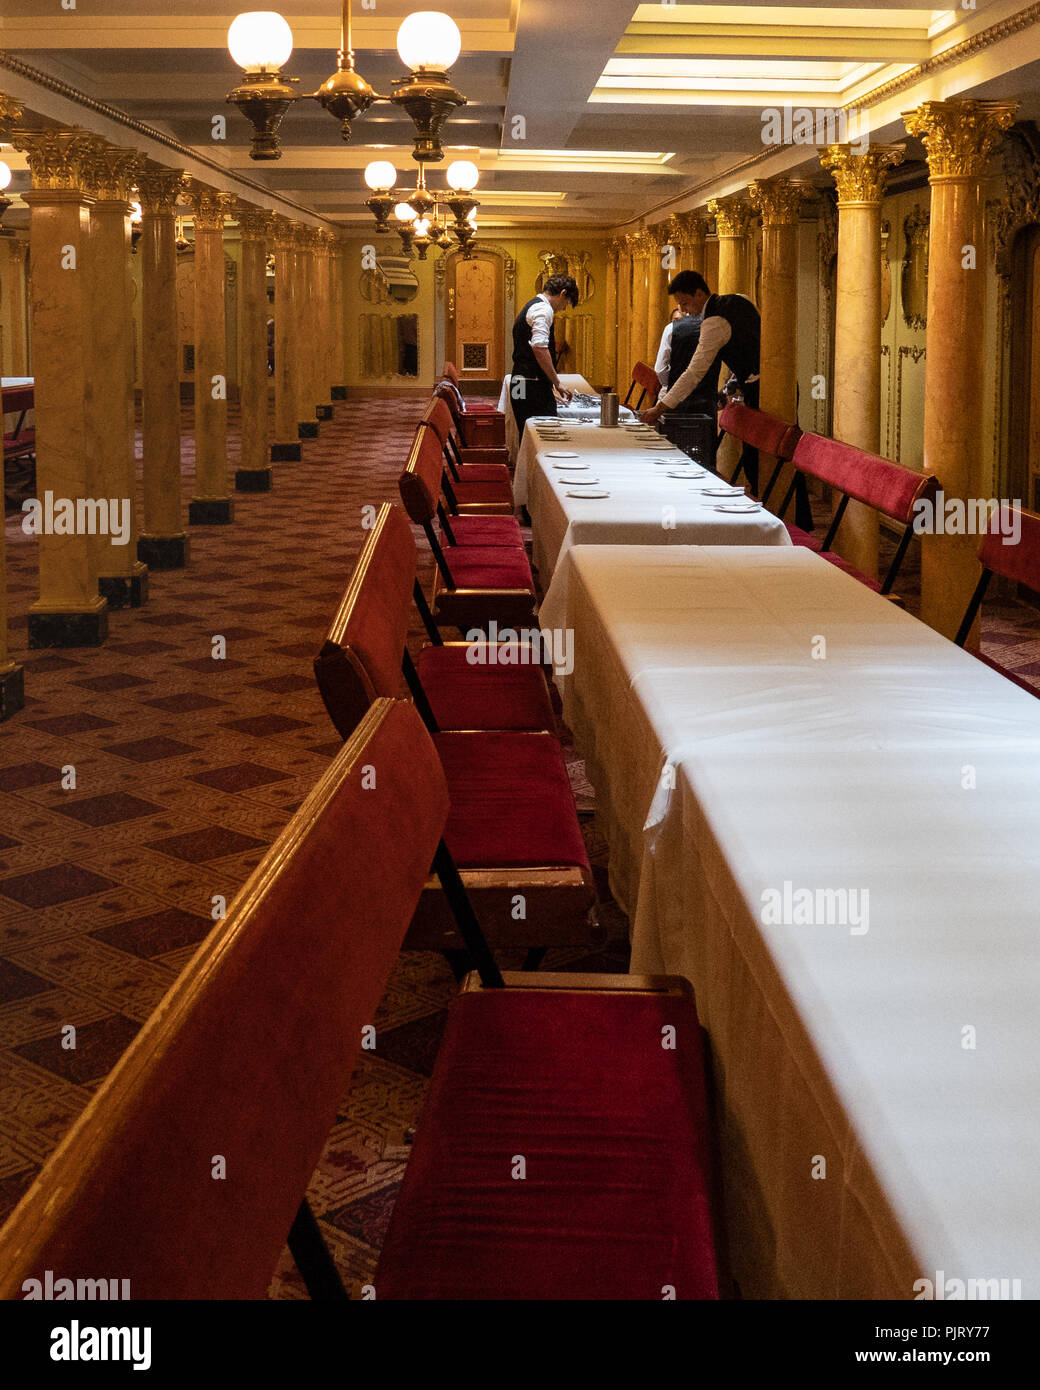 Il personale inizia a stendere il servizio della cena per un evento a bordo della SS Gran Bretagna nel oppulent salone da pranzo. Foto Stock